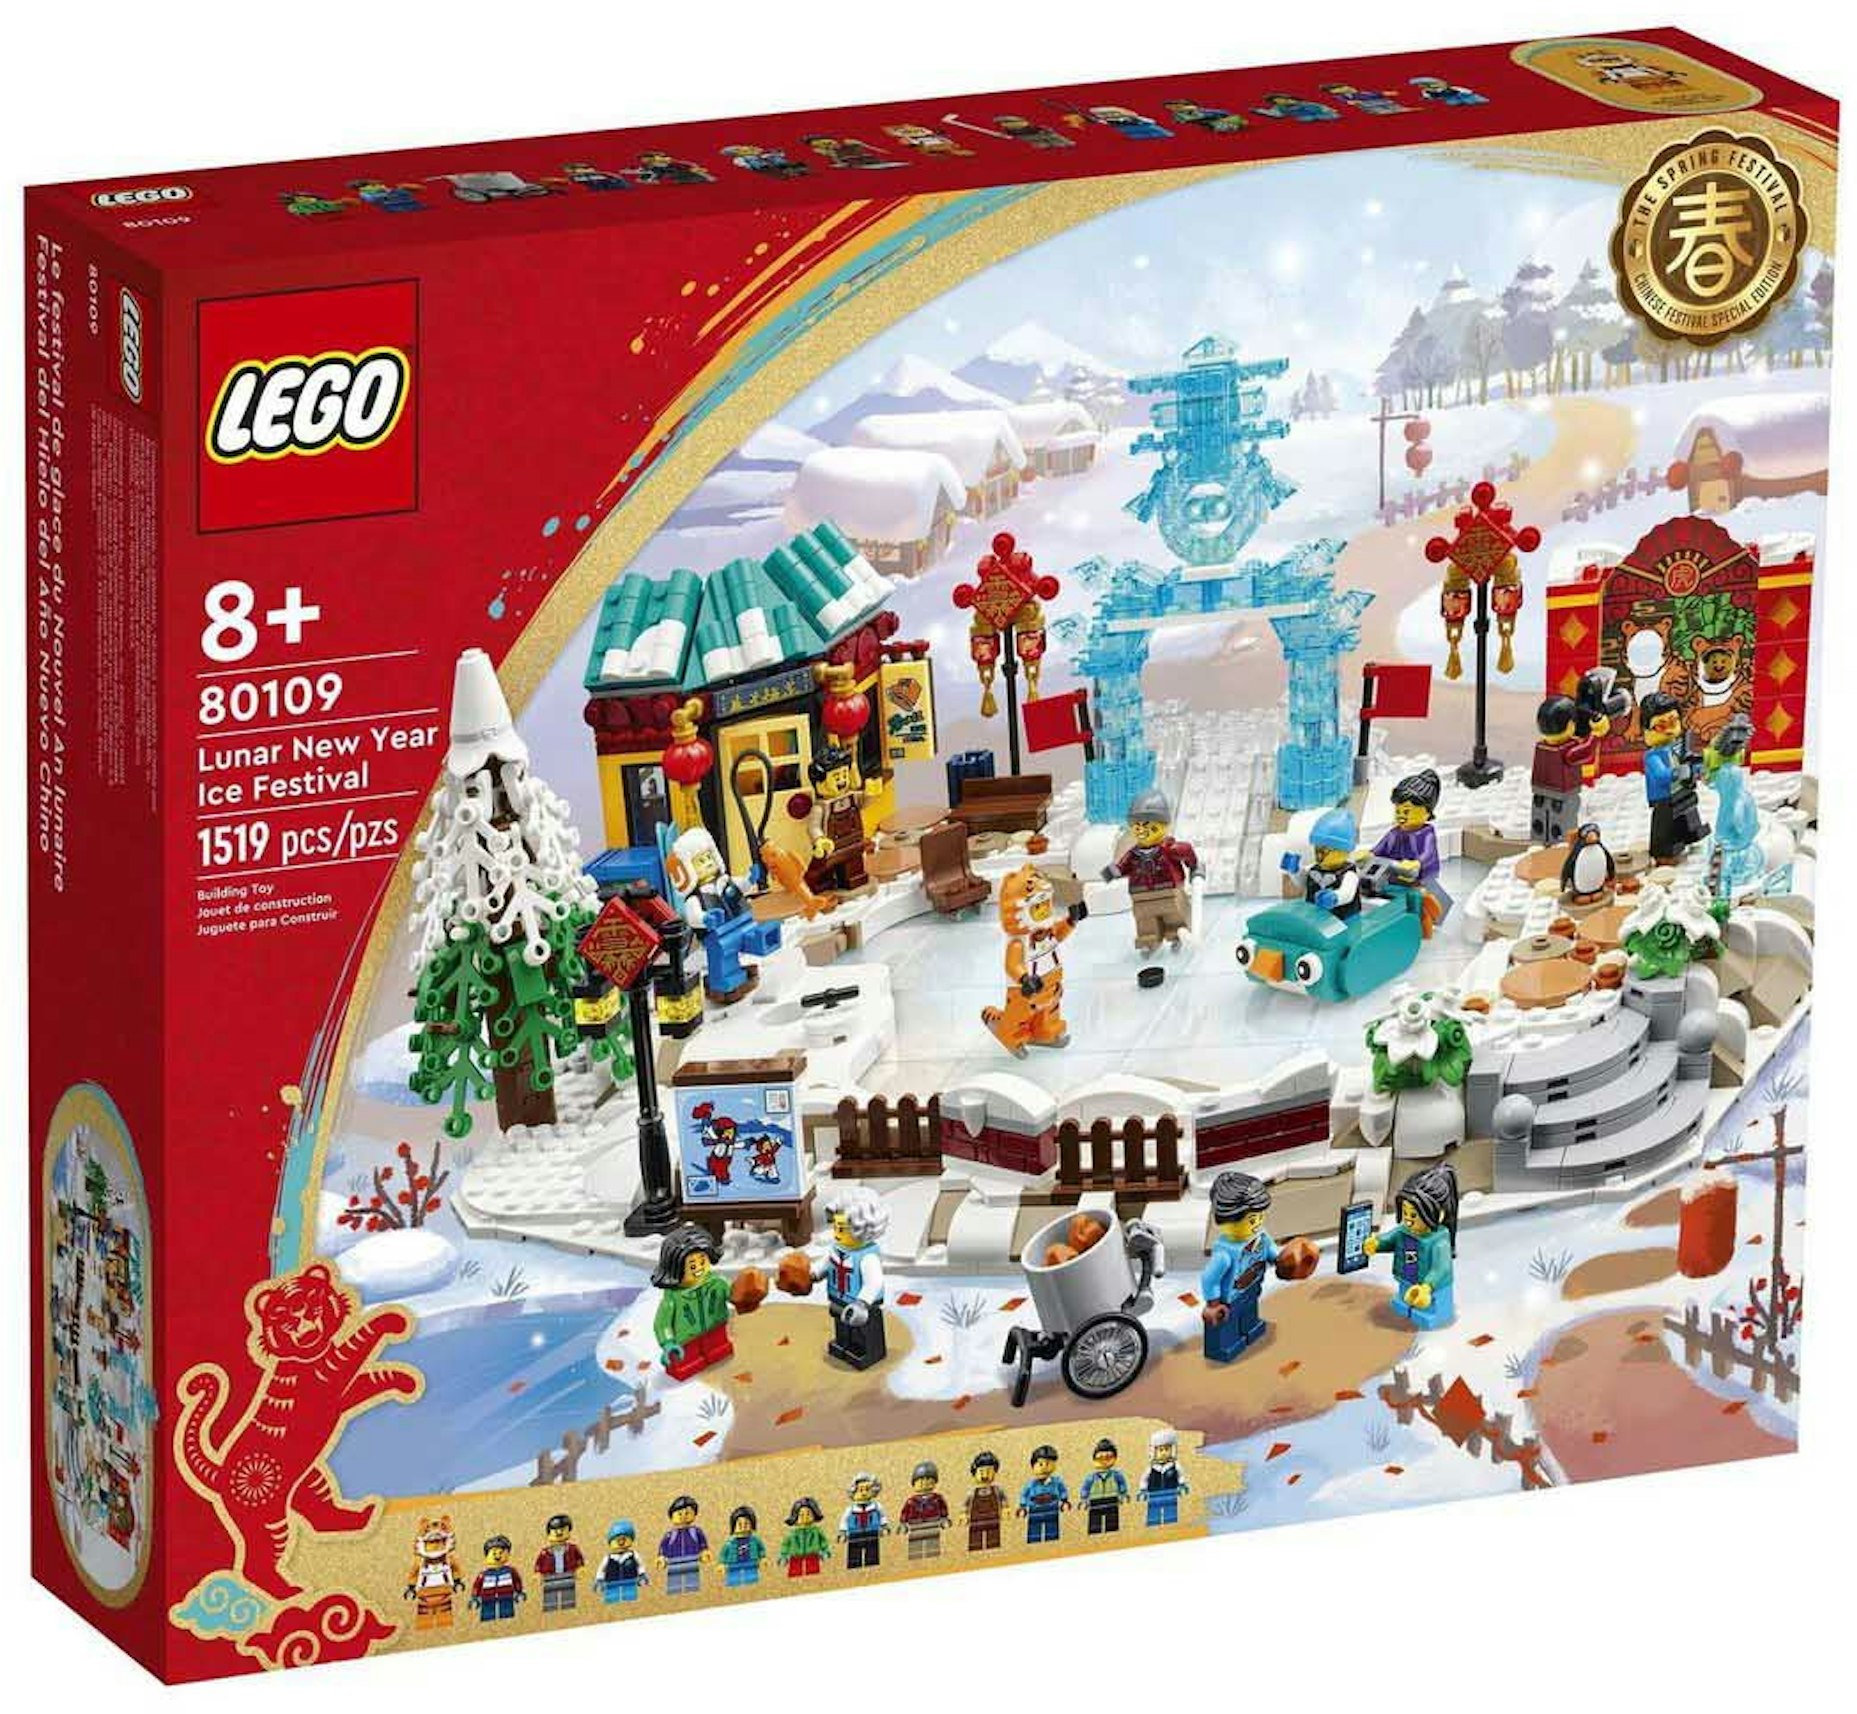 LEGO Lunar New Year Ice Festival Set 80109 - - JP